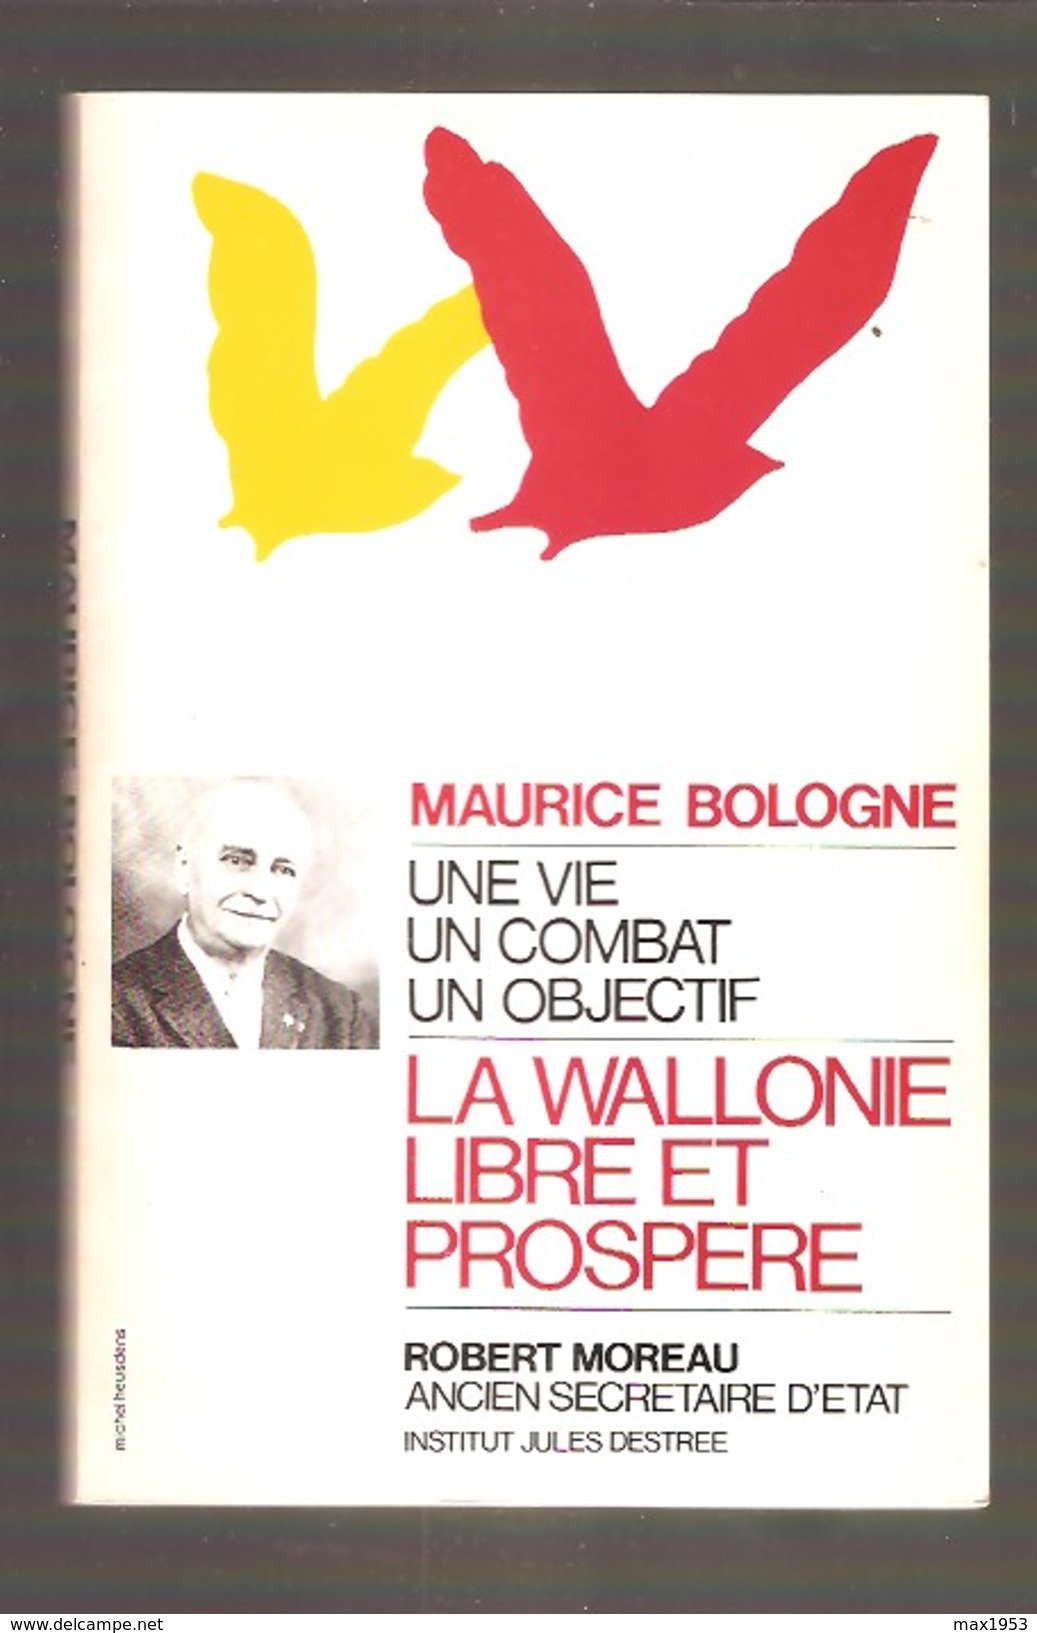 Robert MOREAU - Maurice Bologne Une Vie Un Combat Un Objectif - Institut Jules Destrée, 1985 - Belgique